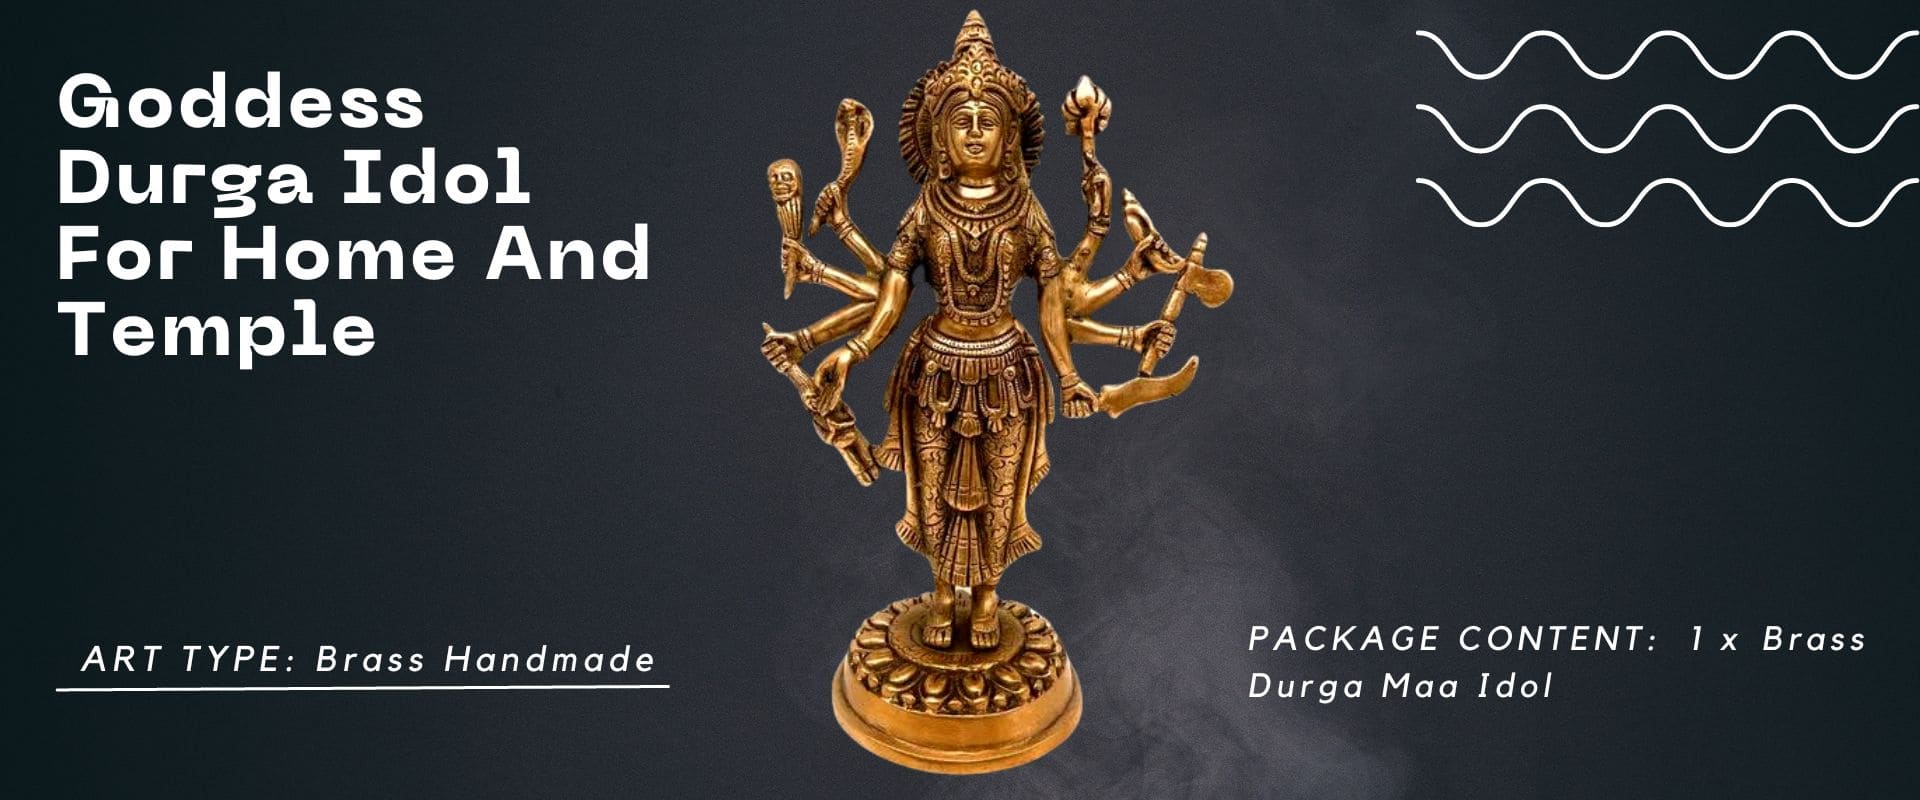 Goddess Durga Statue made of brass